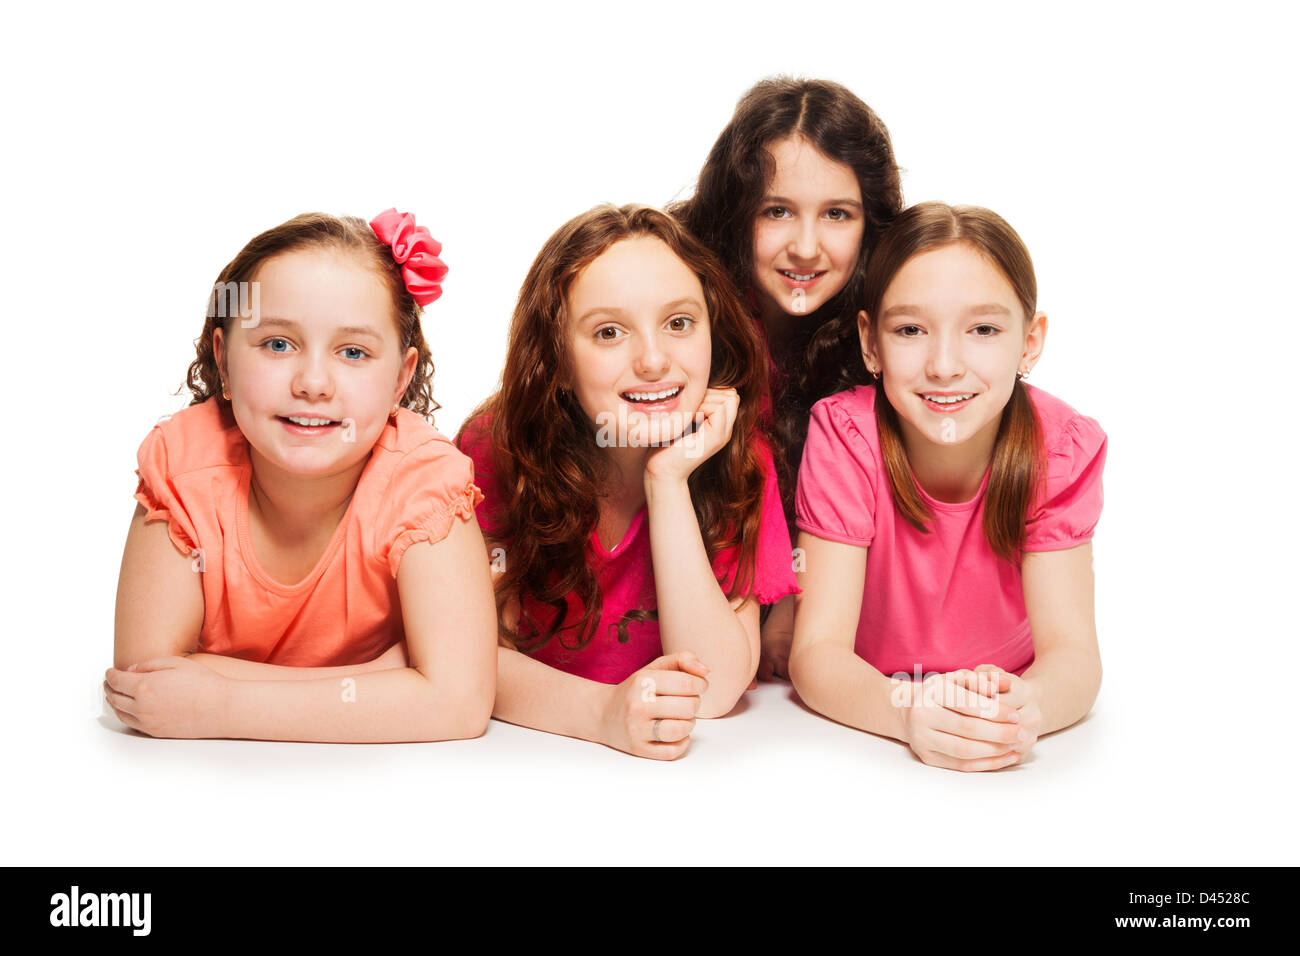 Felice in età scolare le ragazze la posa sul pavimento insieme in maglia rosa, isolato su bianco Foto Stock